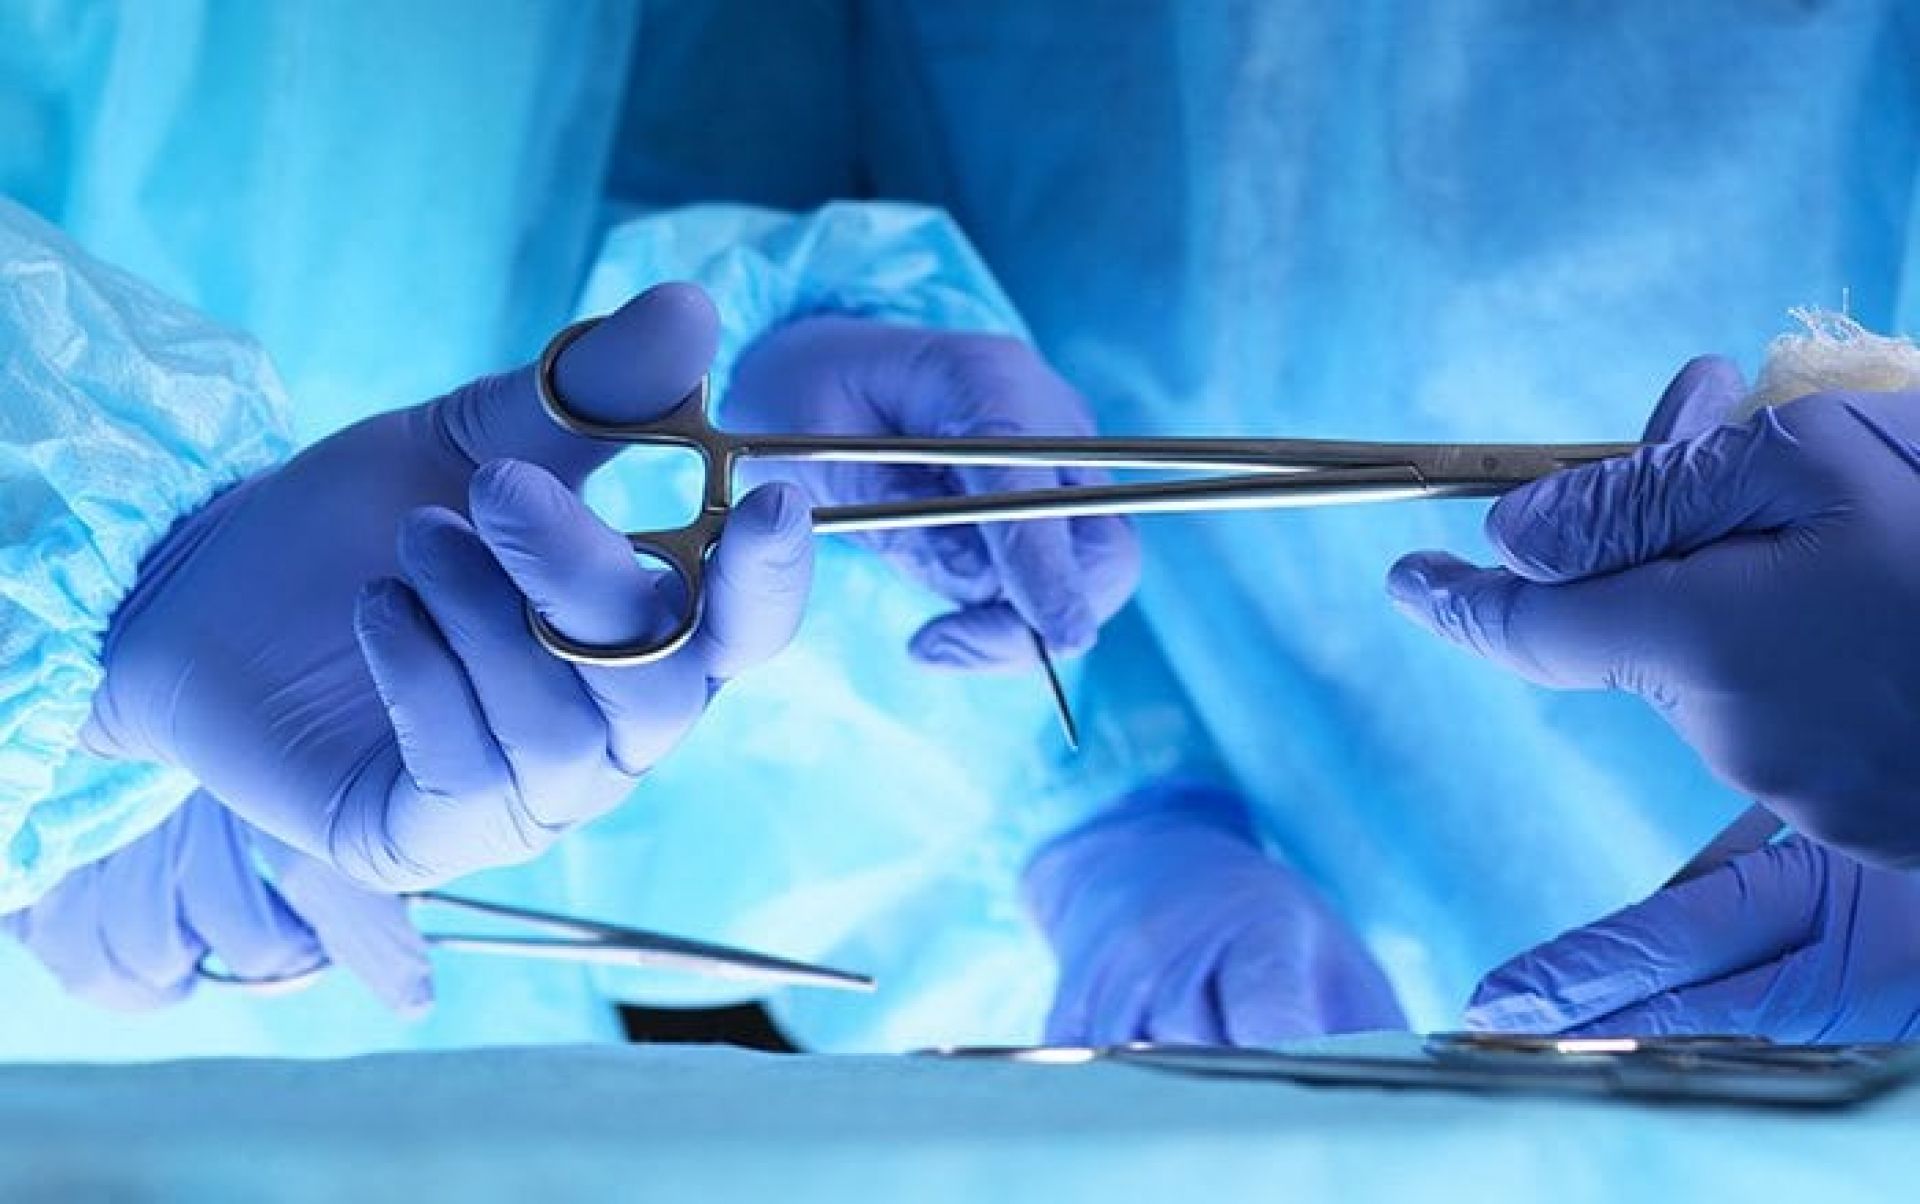 3ο Εκπαιδευτικό Σεμινάριο Ενδοσκοπικής Χειρουργικής Γυναικείου Γεννητικού Συστήματος